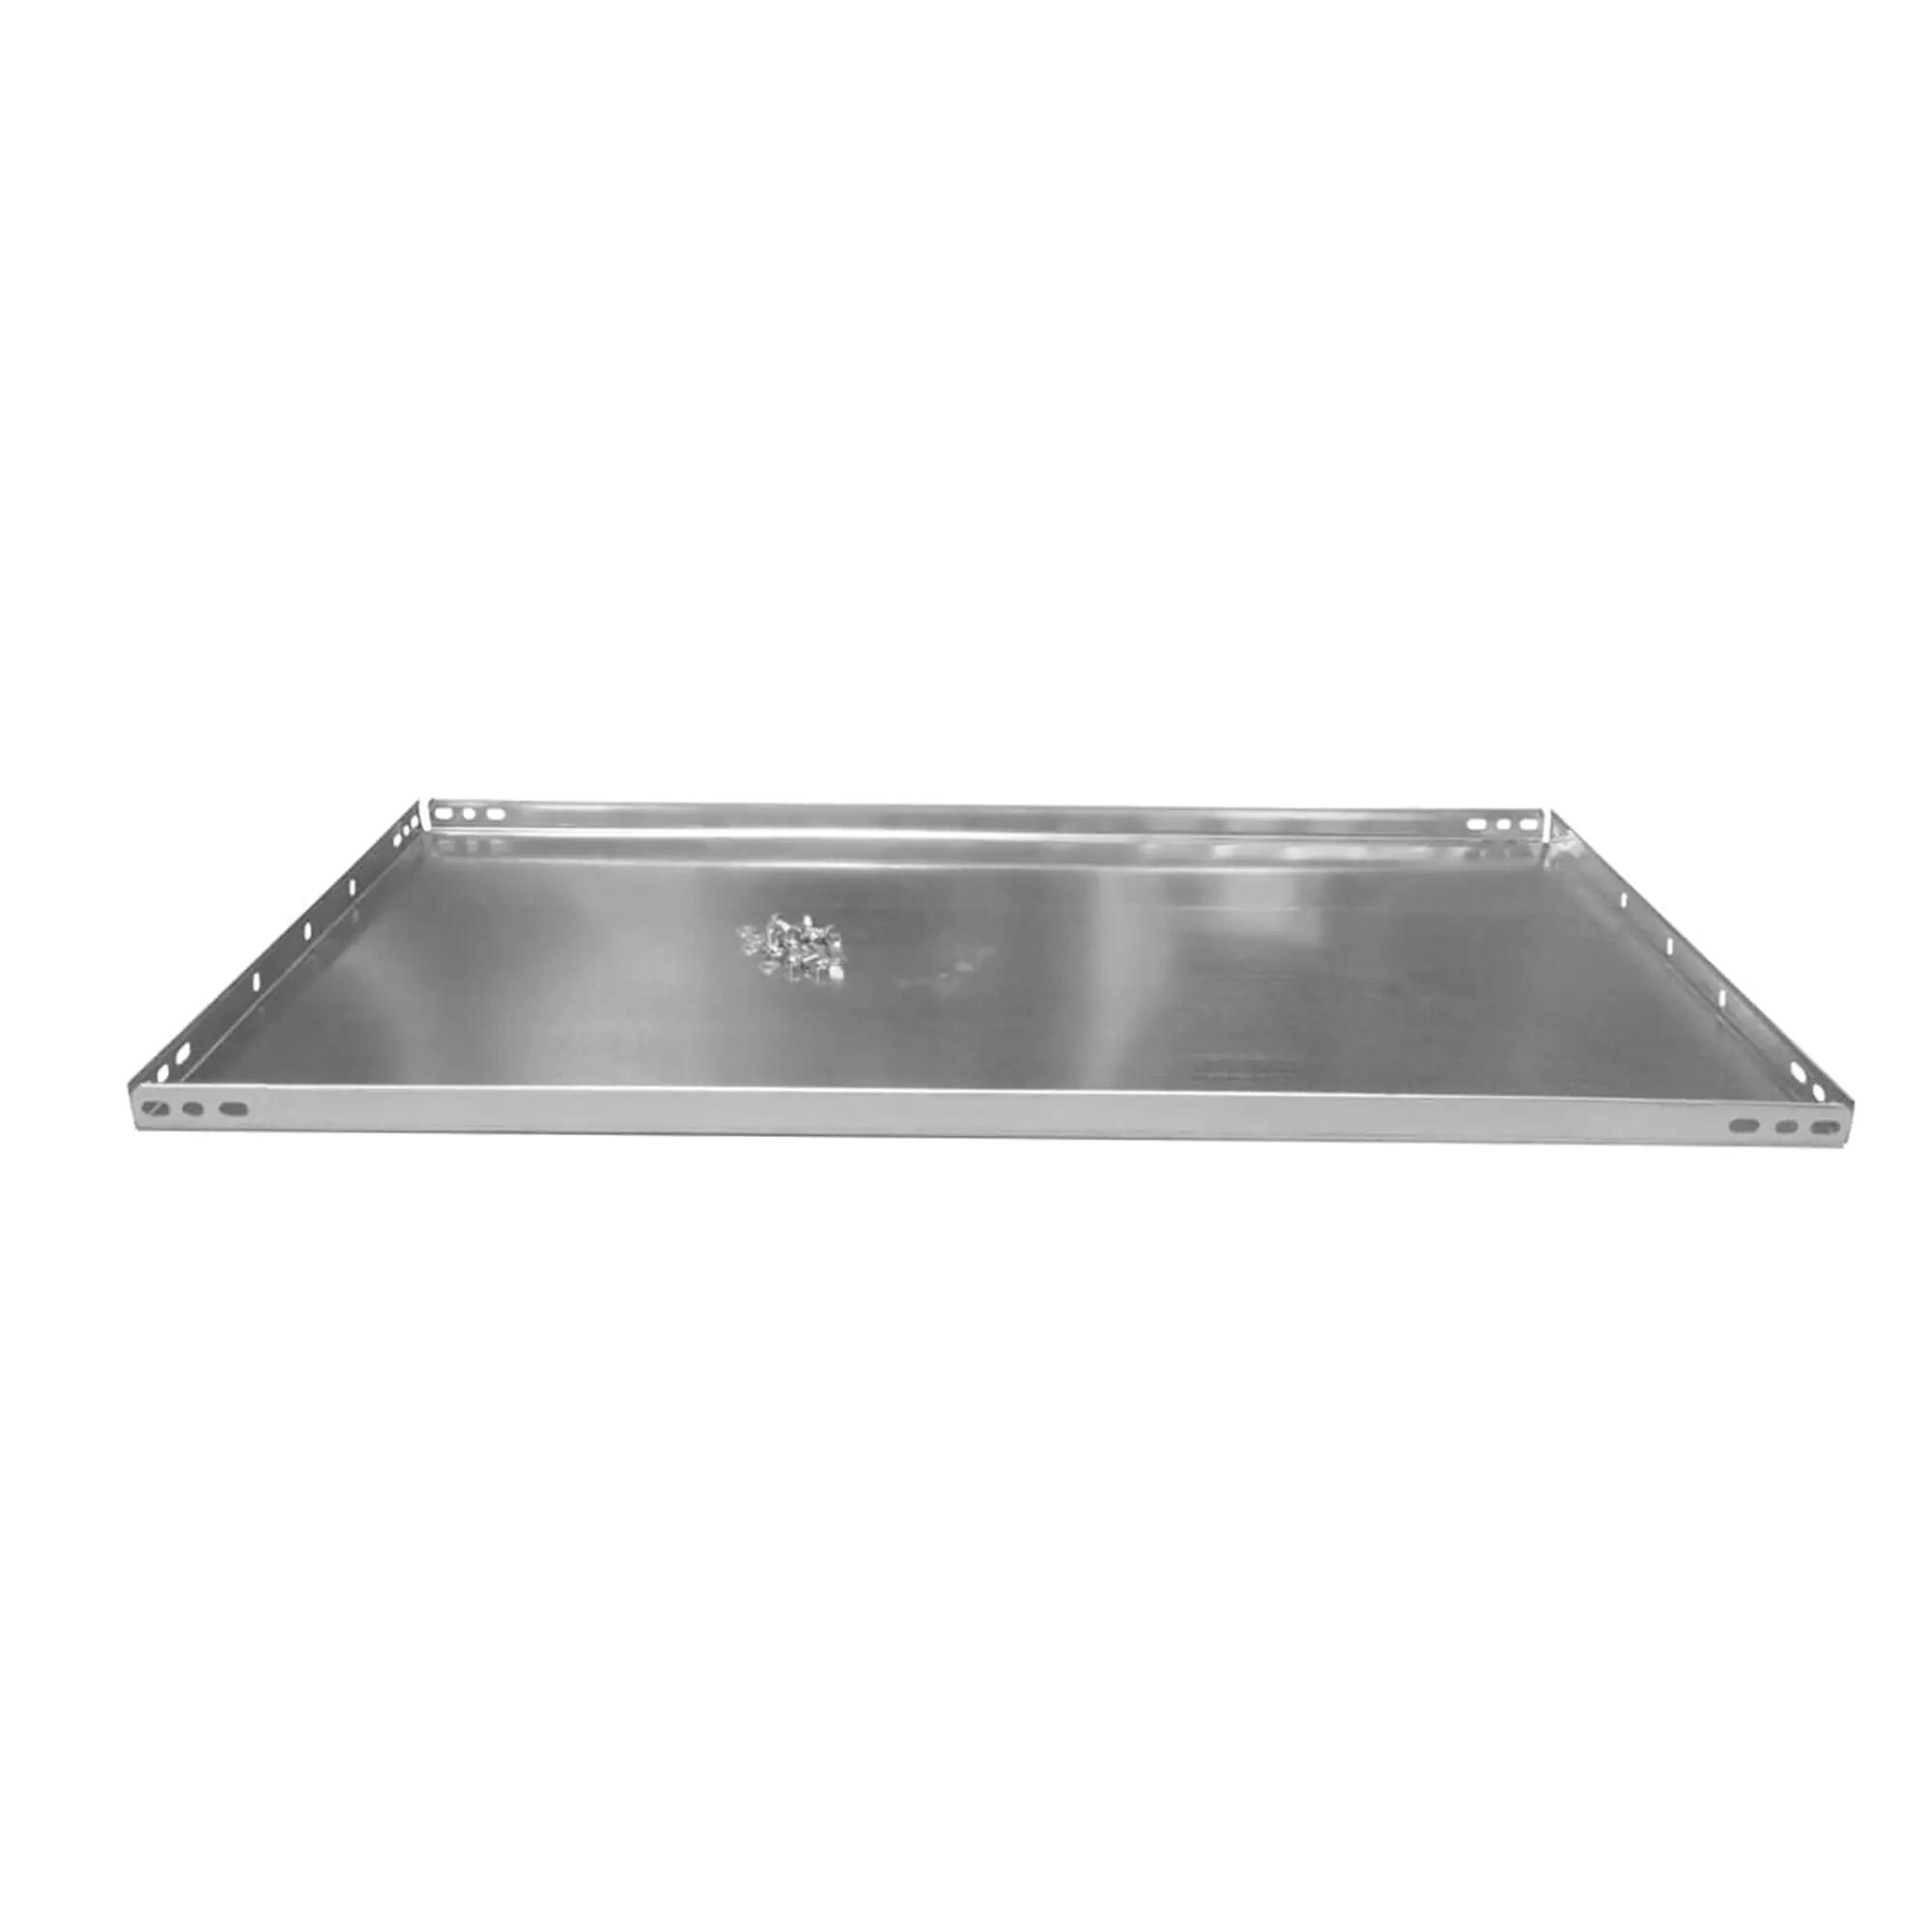 Balda recta para sistema de estantes de acero gris de 60x40cm